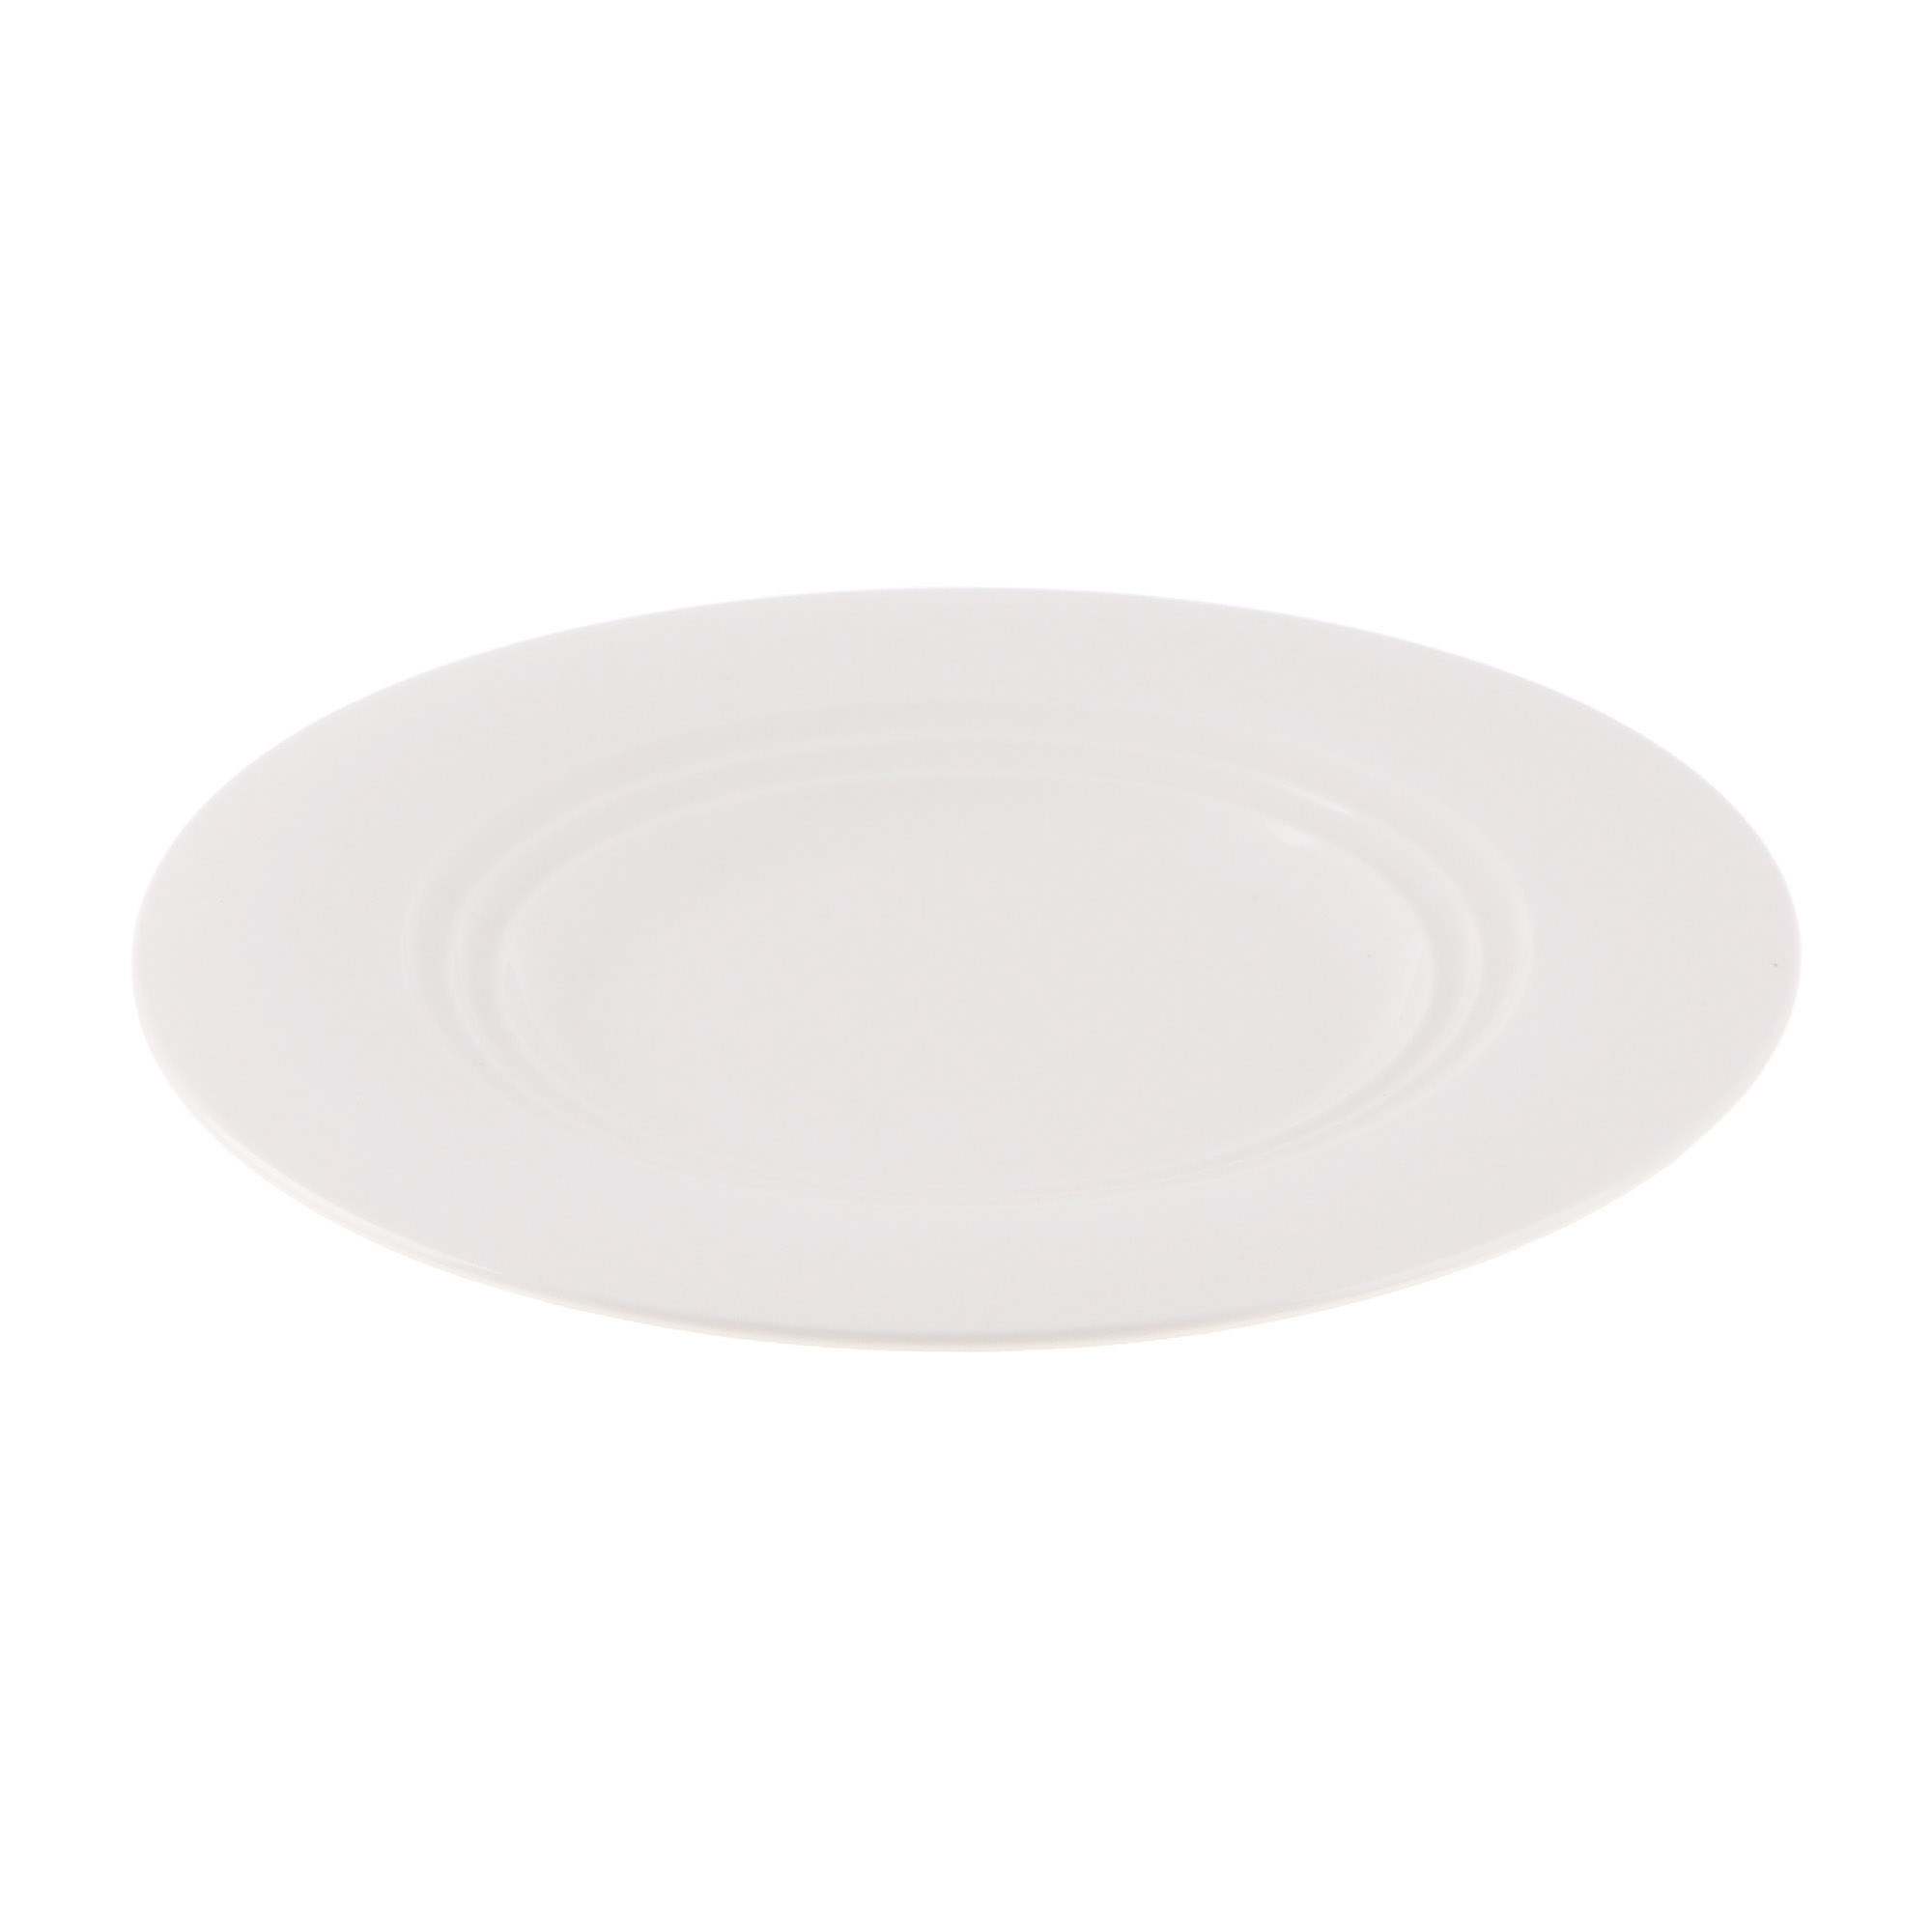 Тарелка Cameo Concentrics фарфор 21 см тарелка cameo dynasty для пасты d30 см 610 v122